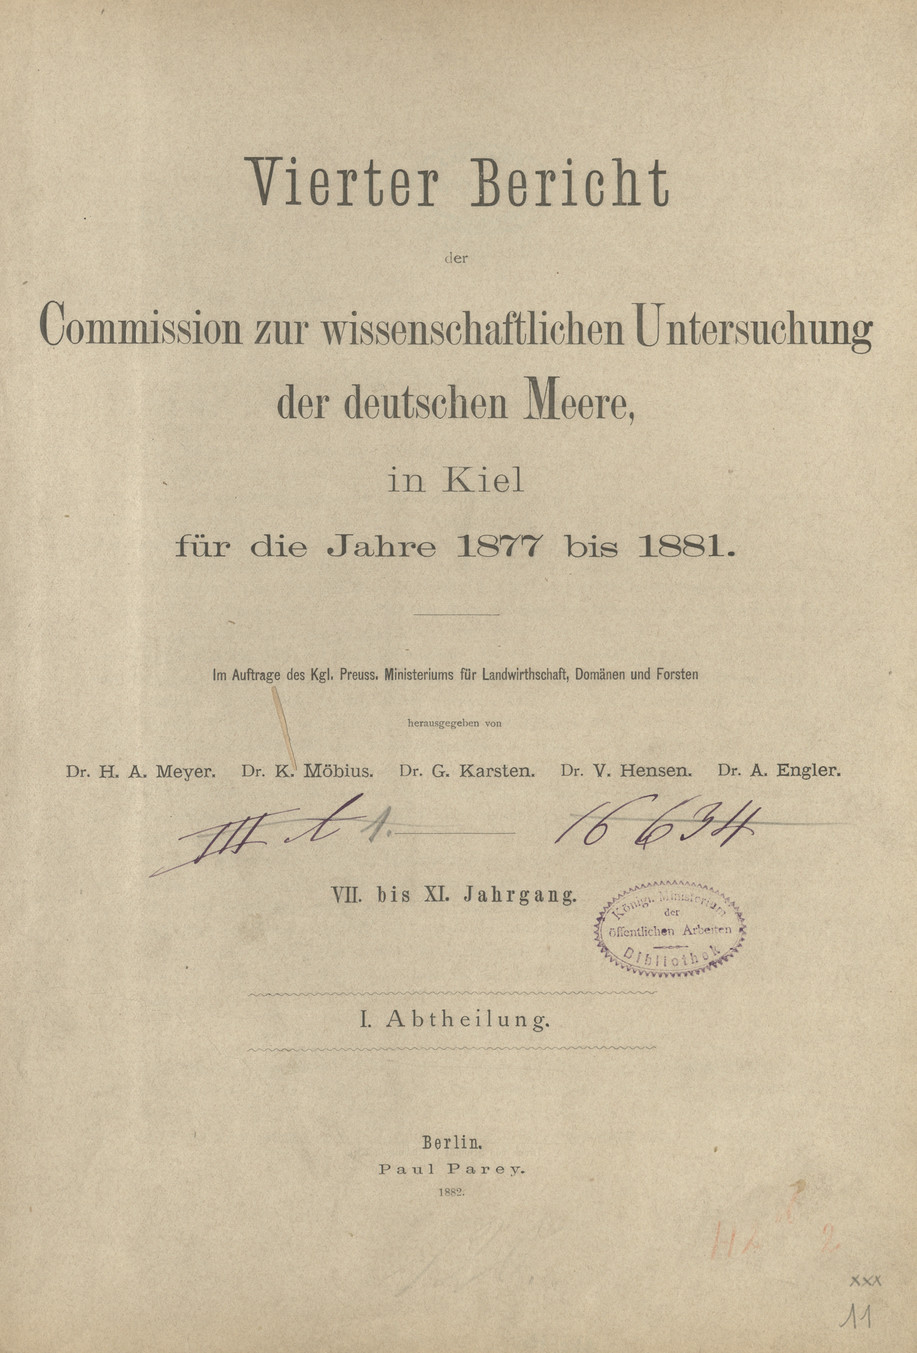 Vierter Bericht der Commission zur wissenschaftlichen Untersuchung der deutschen Meere in Kiel für die Jahre 1877 bis 1881 : VII. bis XI. Jahrgang. Abth. 1